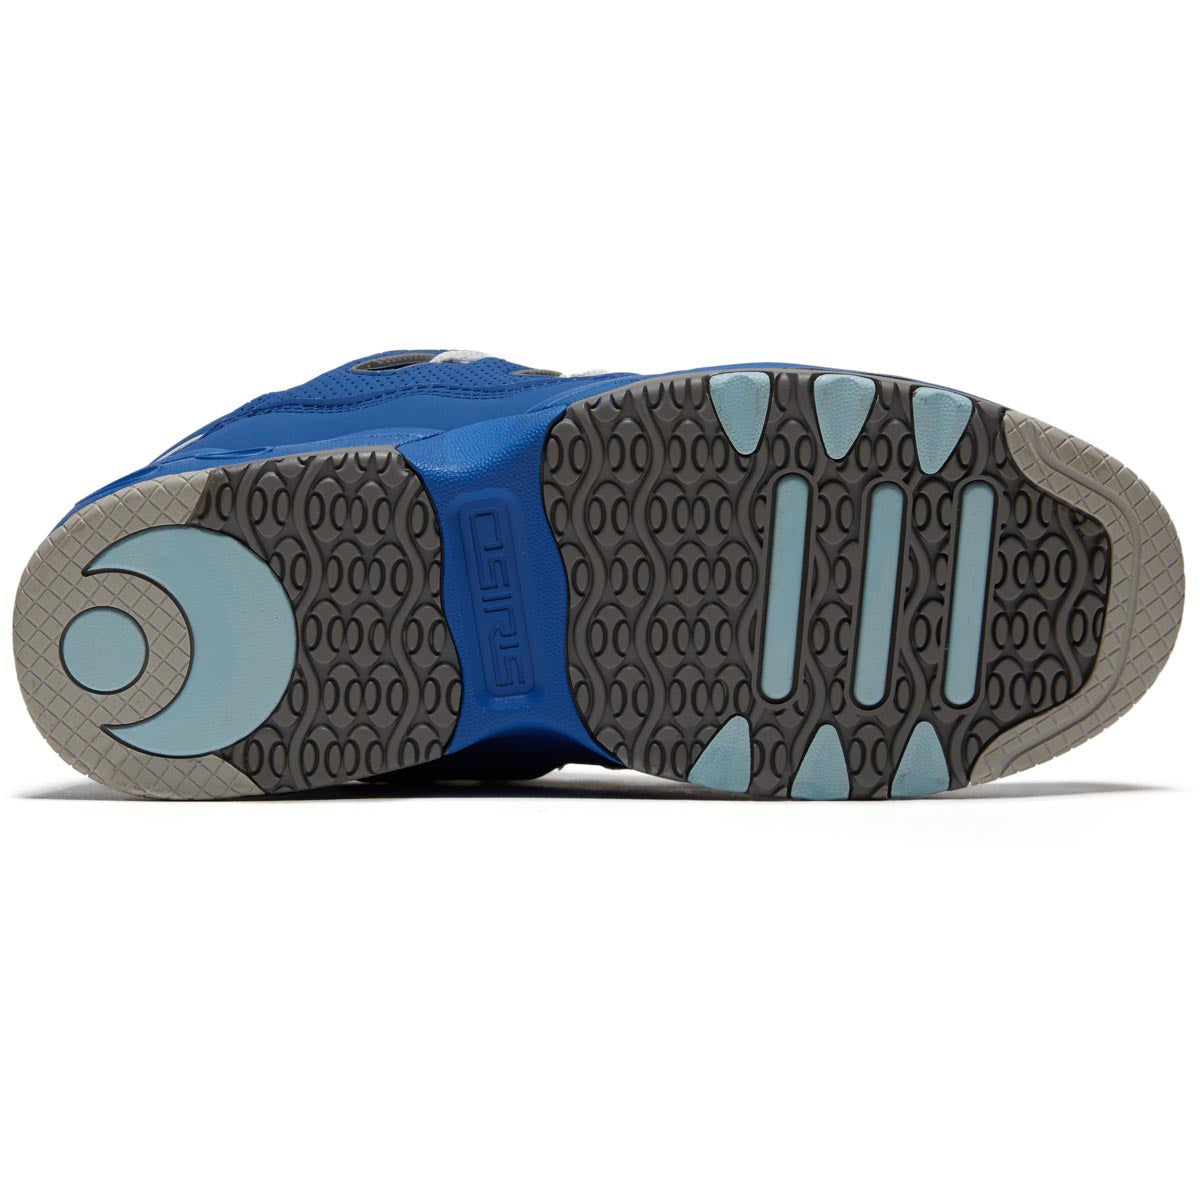 Osiris D3 OG Shoes - Blue/Grey/Black image 4